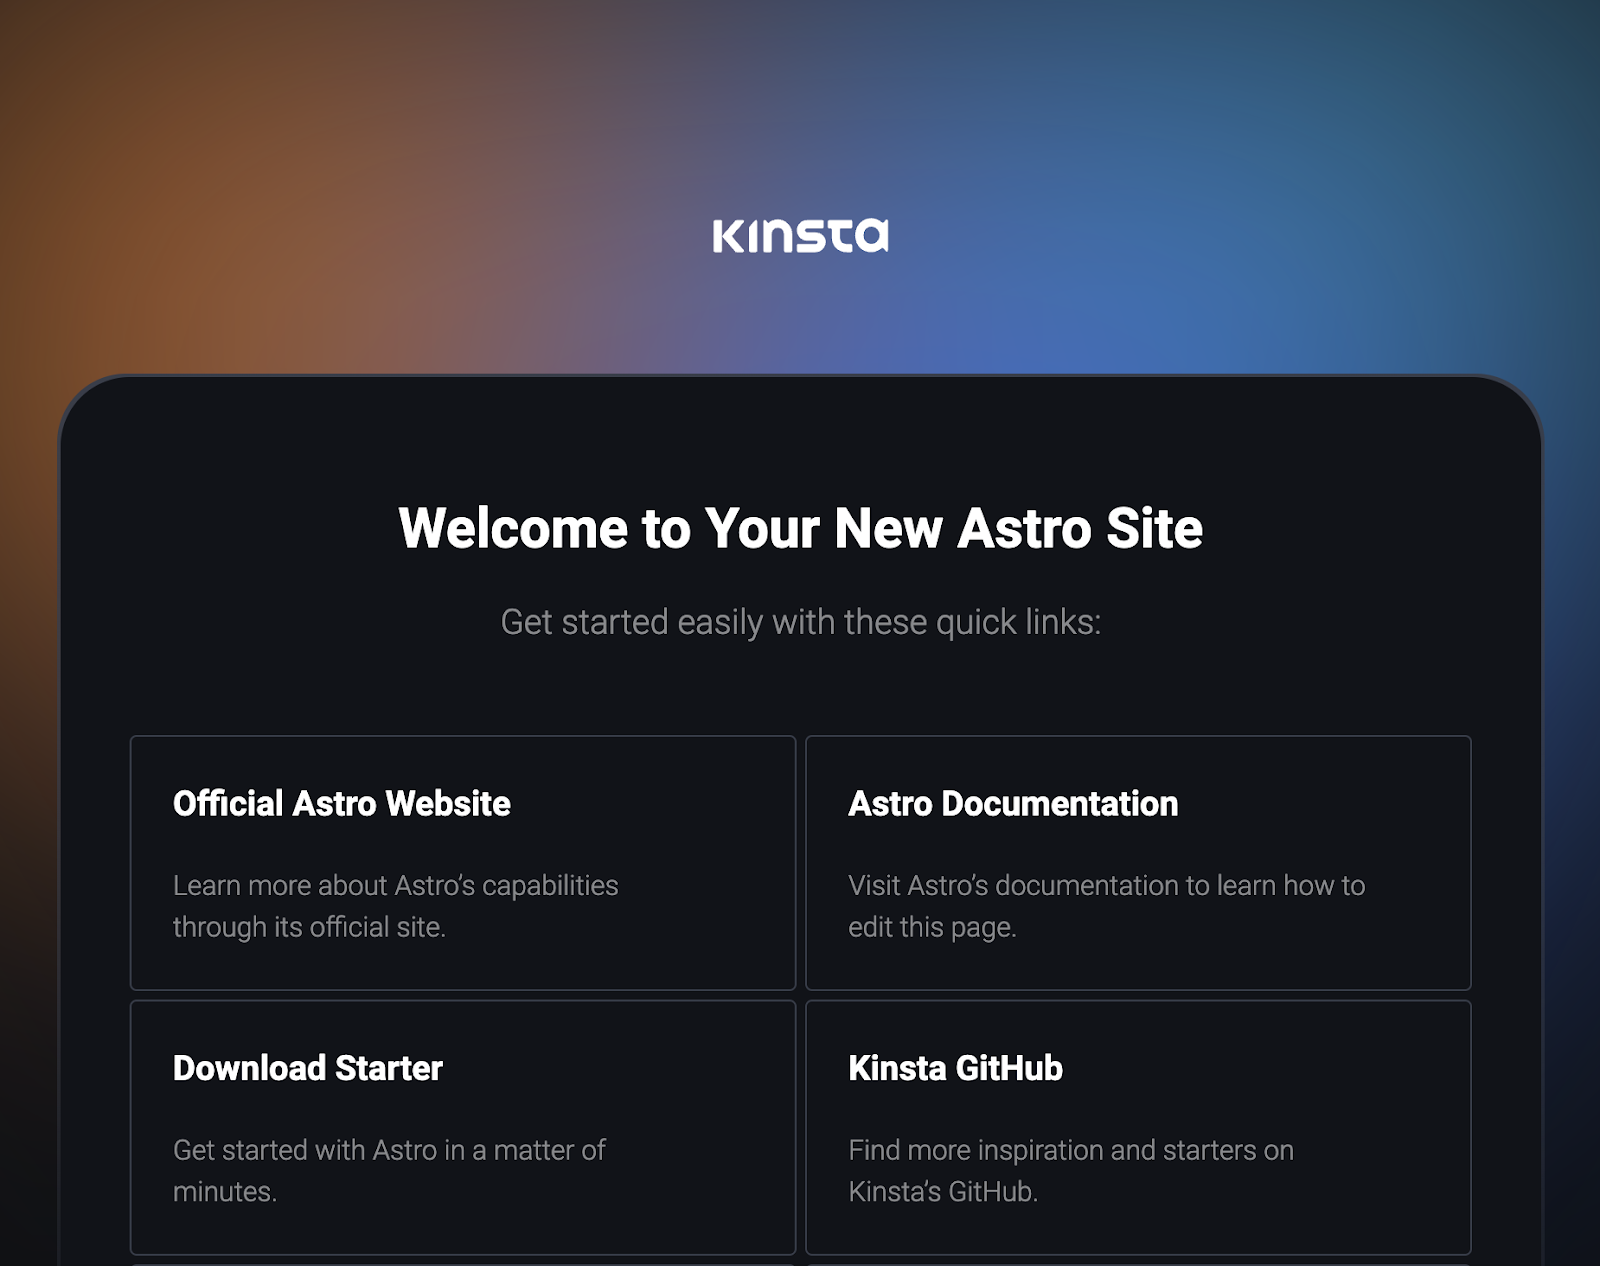 Een donkere pagina met het Kinsta logo in het wit in het midden boven de woorden "Welcome to Your New Astro Site", gevolgd door twee rijen kaarten met de labels "Official Astro Website", "Astro Documentation", "Download Starter" en "Kinsta GitHub".